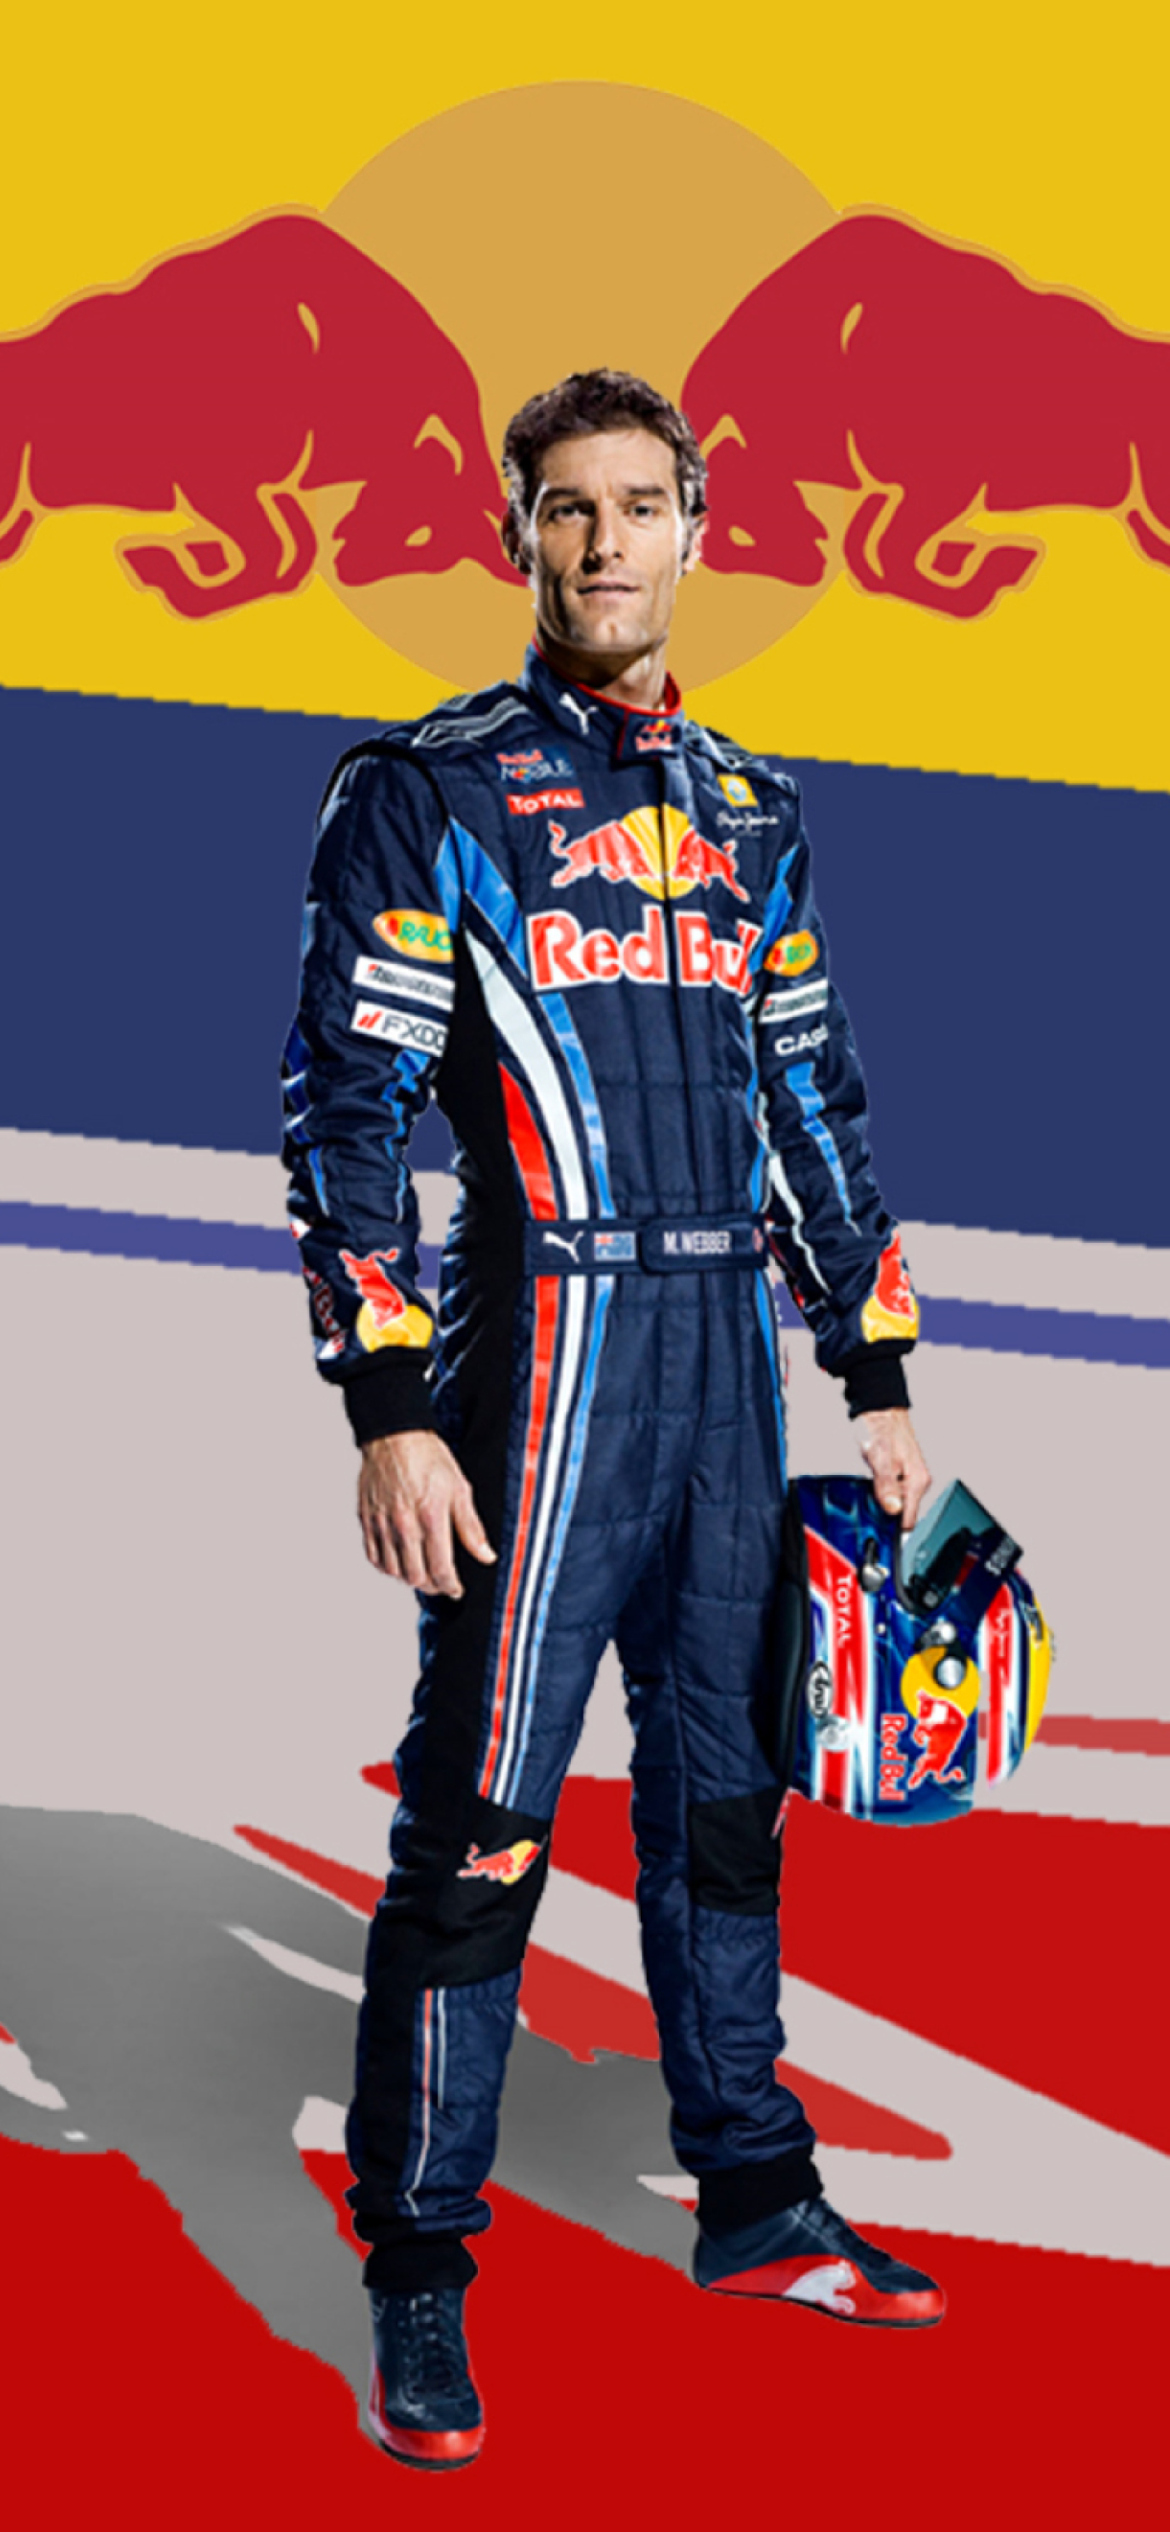 Sebastian Vettel Red Bull wallpaper 1170x2532